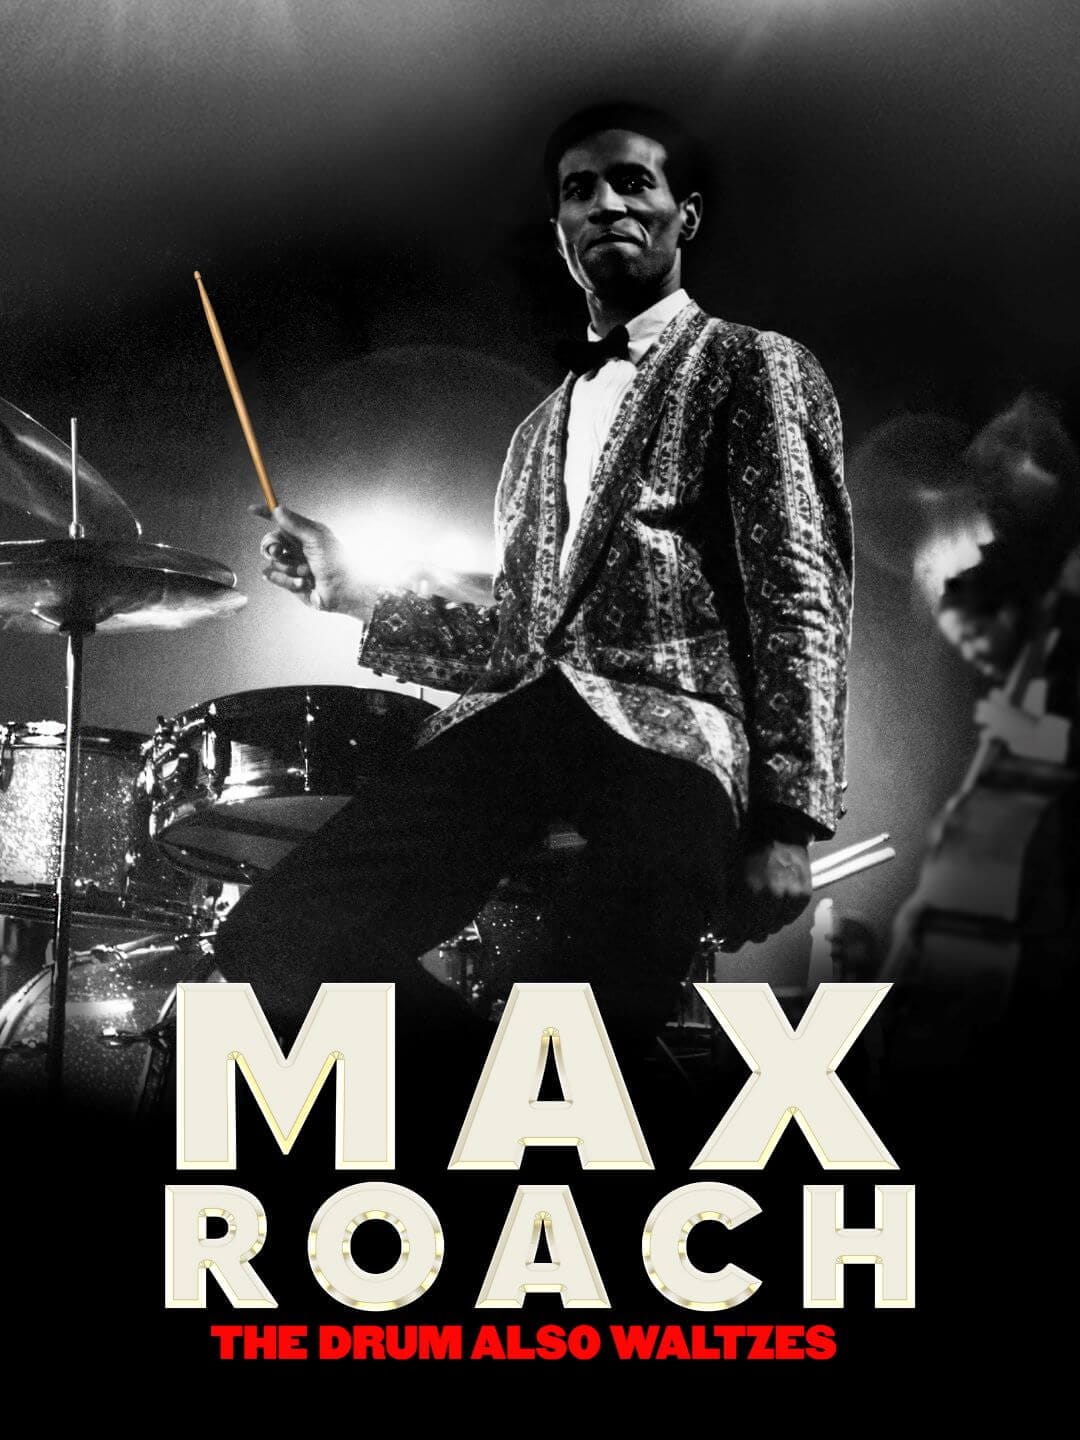 Max Roach: The Drum Also Waltzes - Sam Pollard & Ben Shapiro